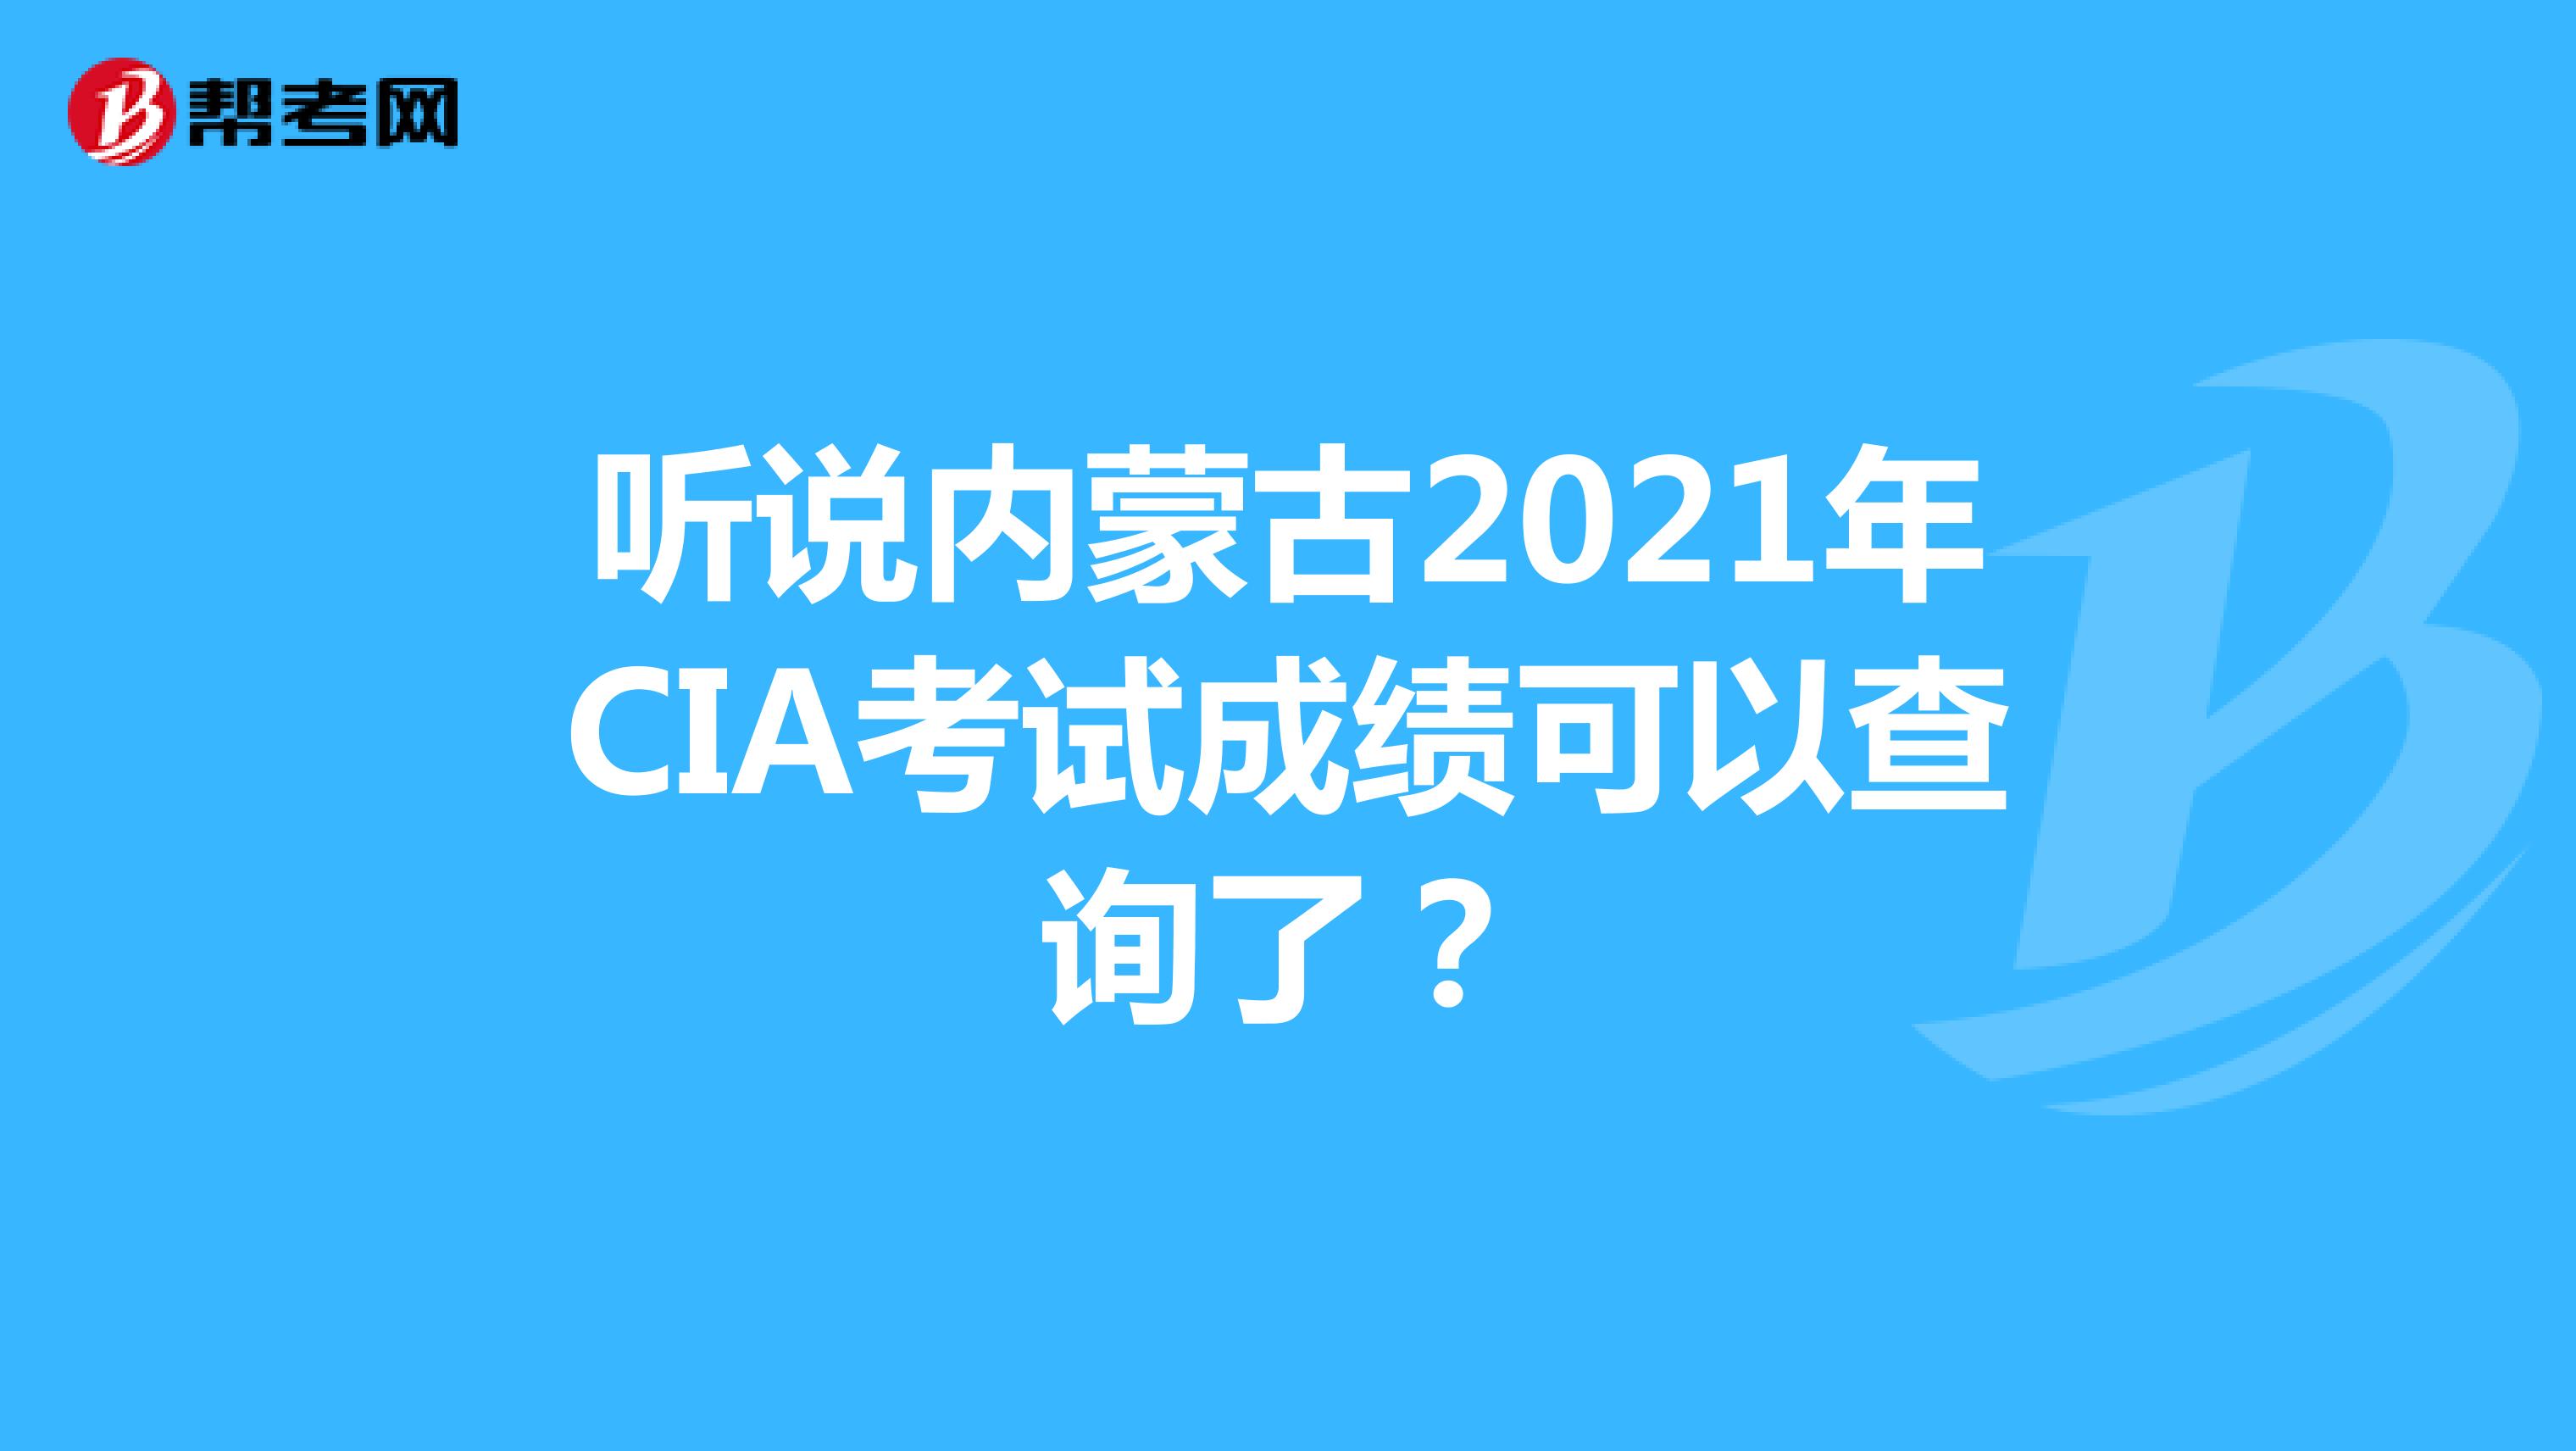 听说内蒙古2021年CIA考试成绩可以查询了？